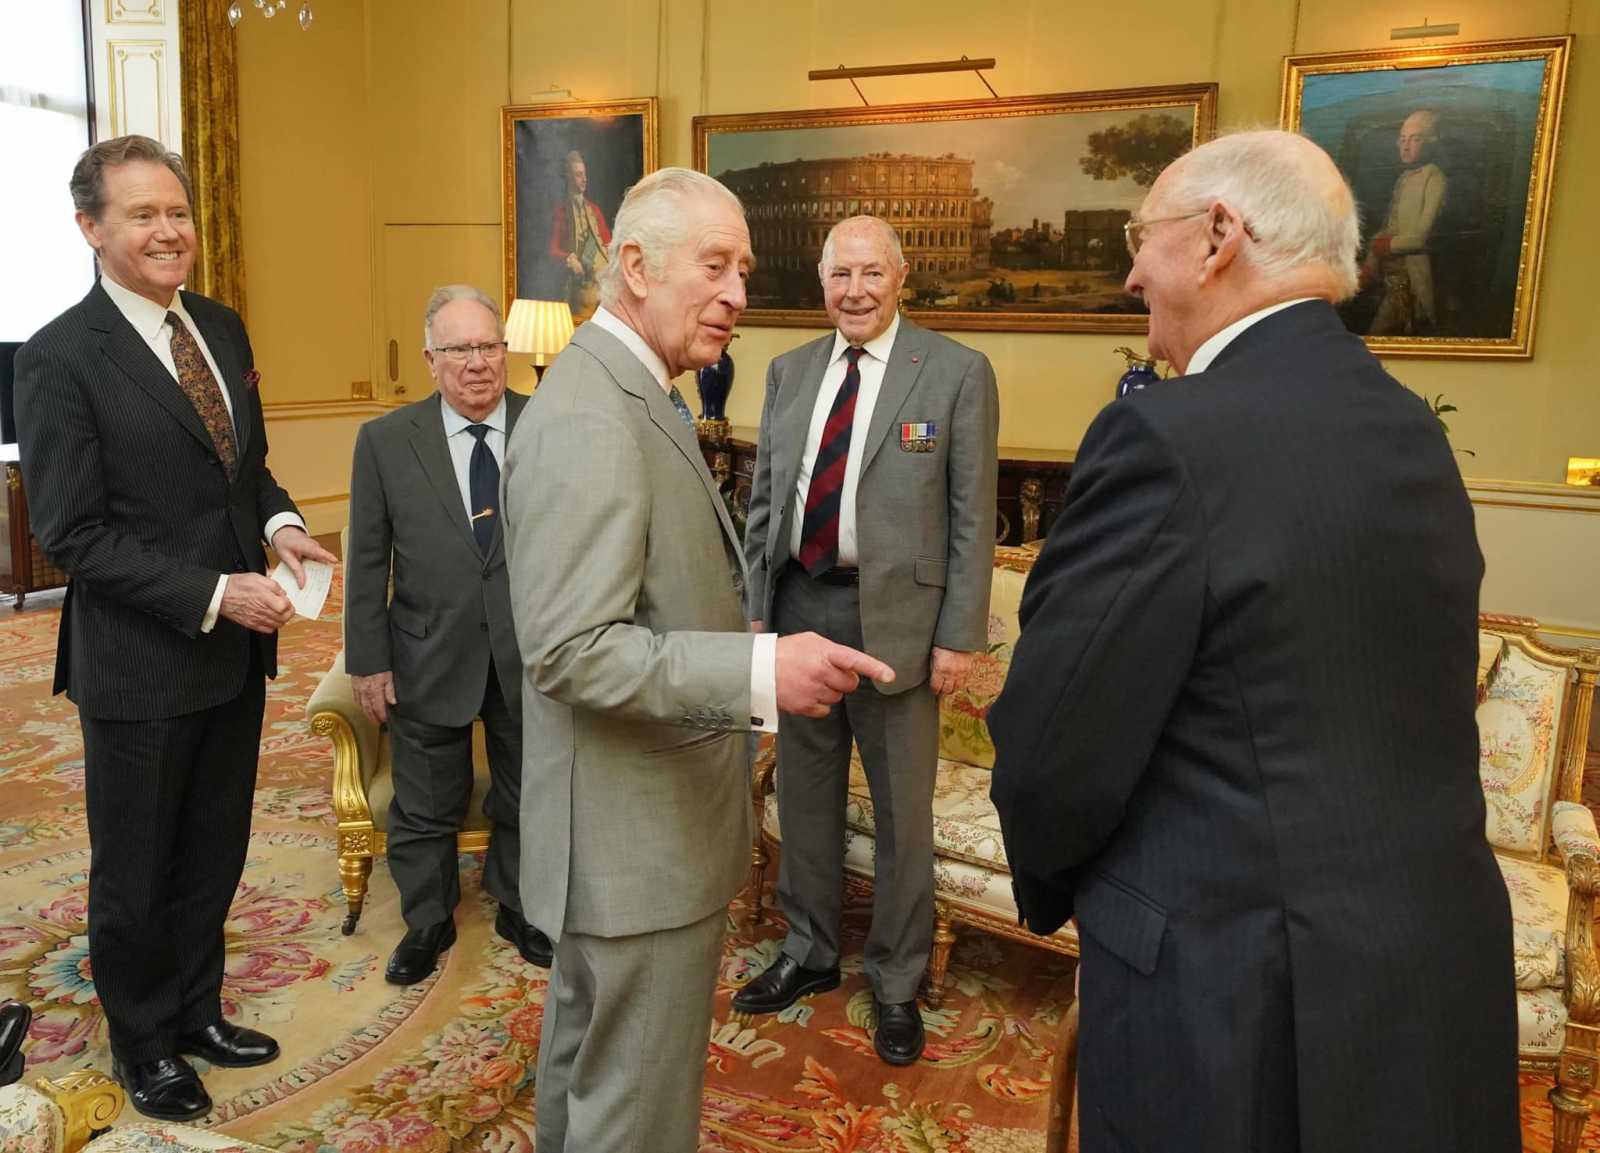 Háborús veteránokkal találkozott Károly király március 19-én | Fotó forrása: The Royal Family/Facebook